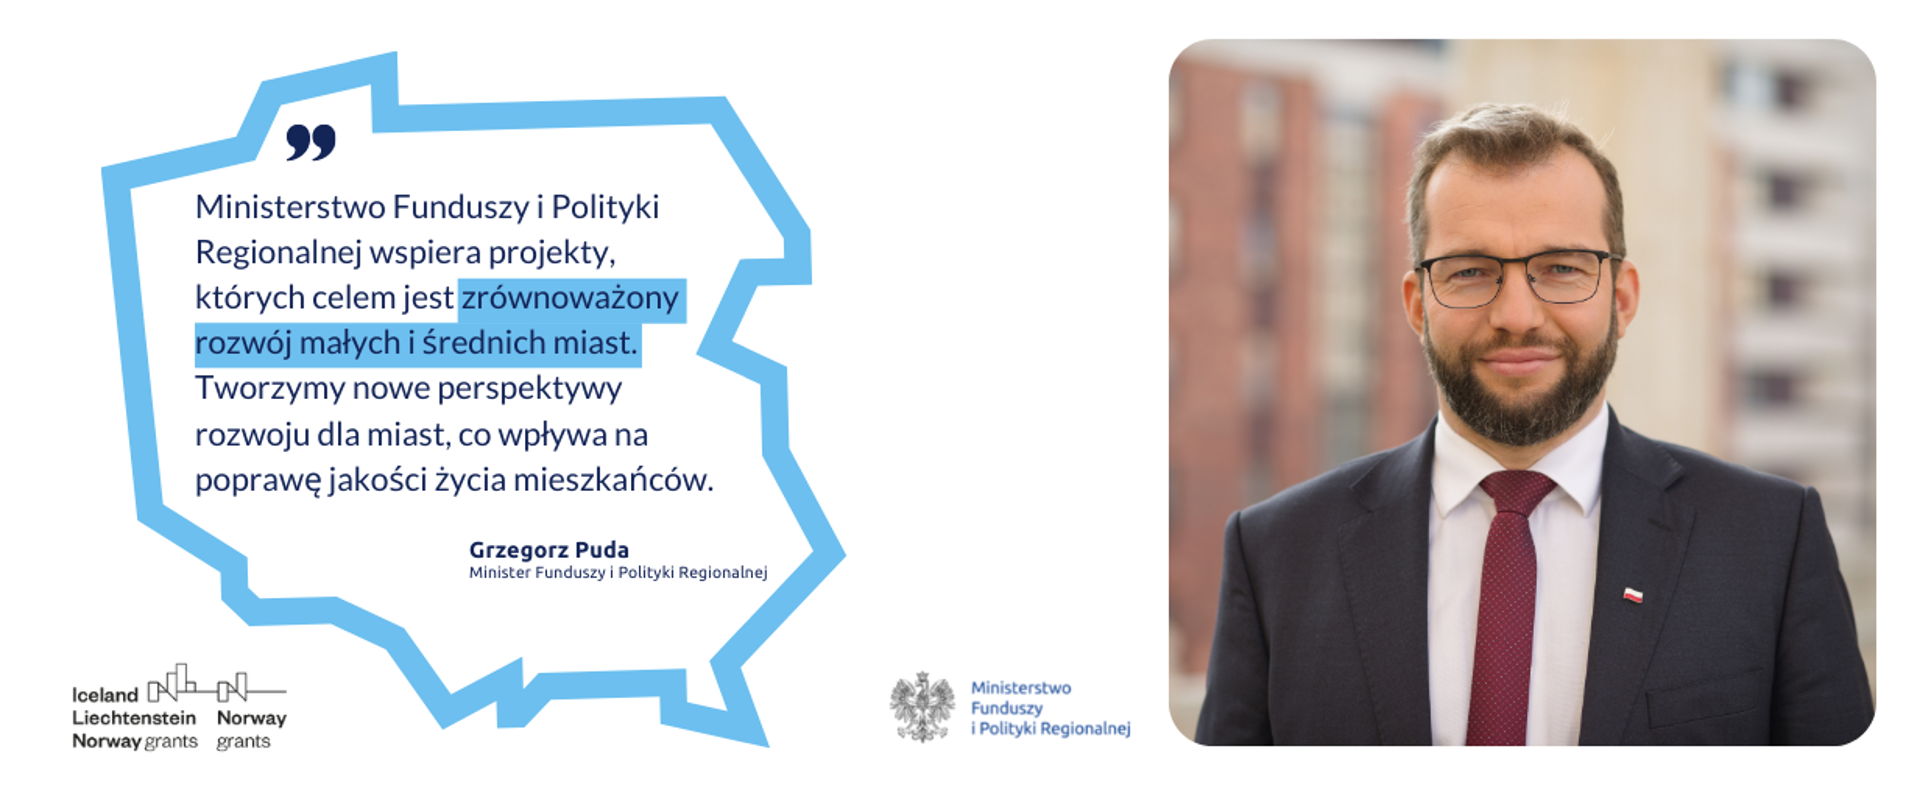 Cytat ministra Grzegorza Pudy w ramce o kształcie Polski: Ministerstwo Funduszy i Polityki Regionalnej wspiera projekty, których celem jest zrównoważony rozwój małych i średnich miast. Tworzymy nowe perspektywy rozwoju dla miast co wpływa na poprawę jakości życia mieszkańców.